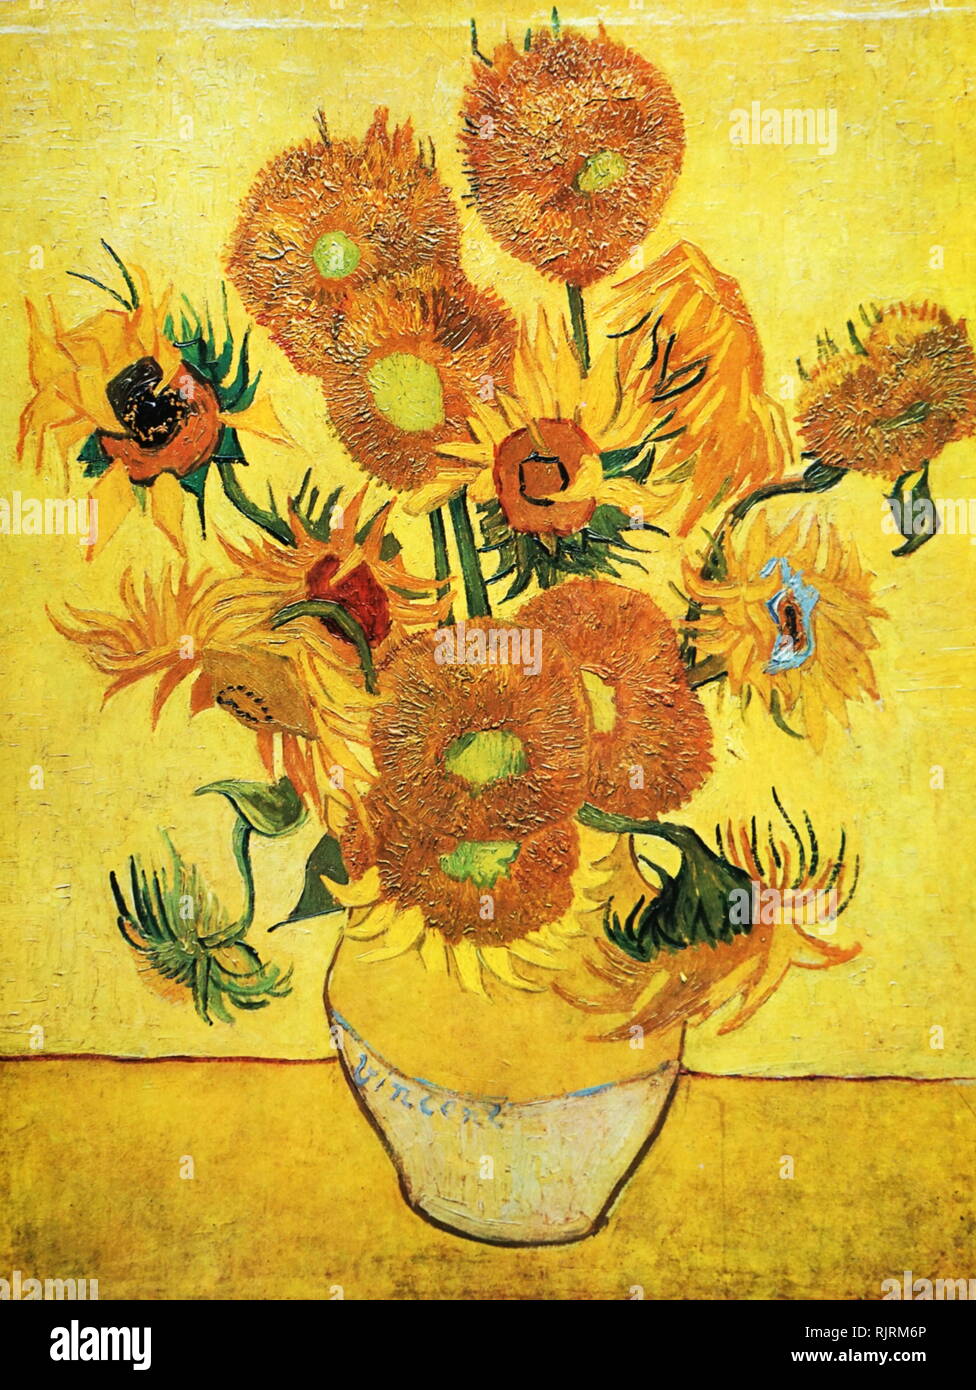 Tournesols (F458), la répétition de la 4ème version (fond jaune) ; Huile sur toile, Musée Van Gogh, Amsterdam, Pays-Bas ; 1888 ; par l'artiste hollandais Vincent van Gogh (1853-1890). Banque D'Images